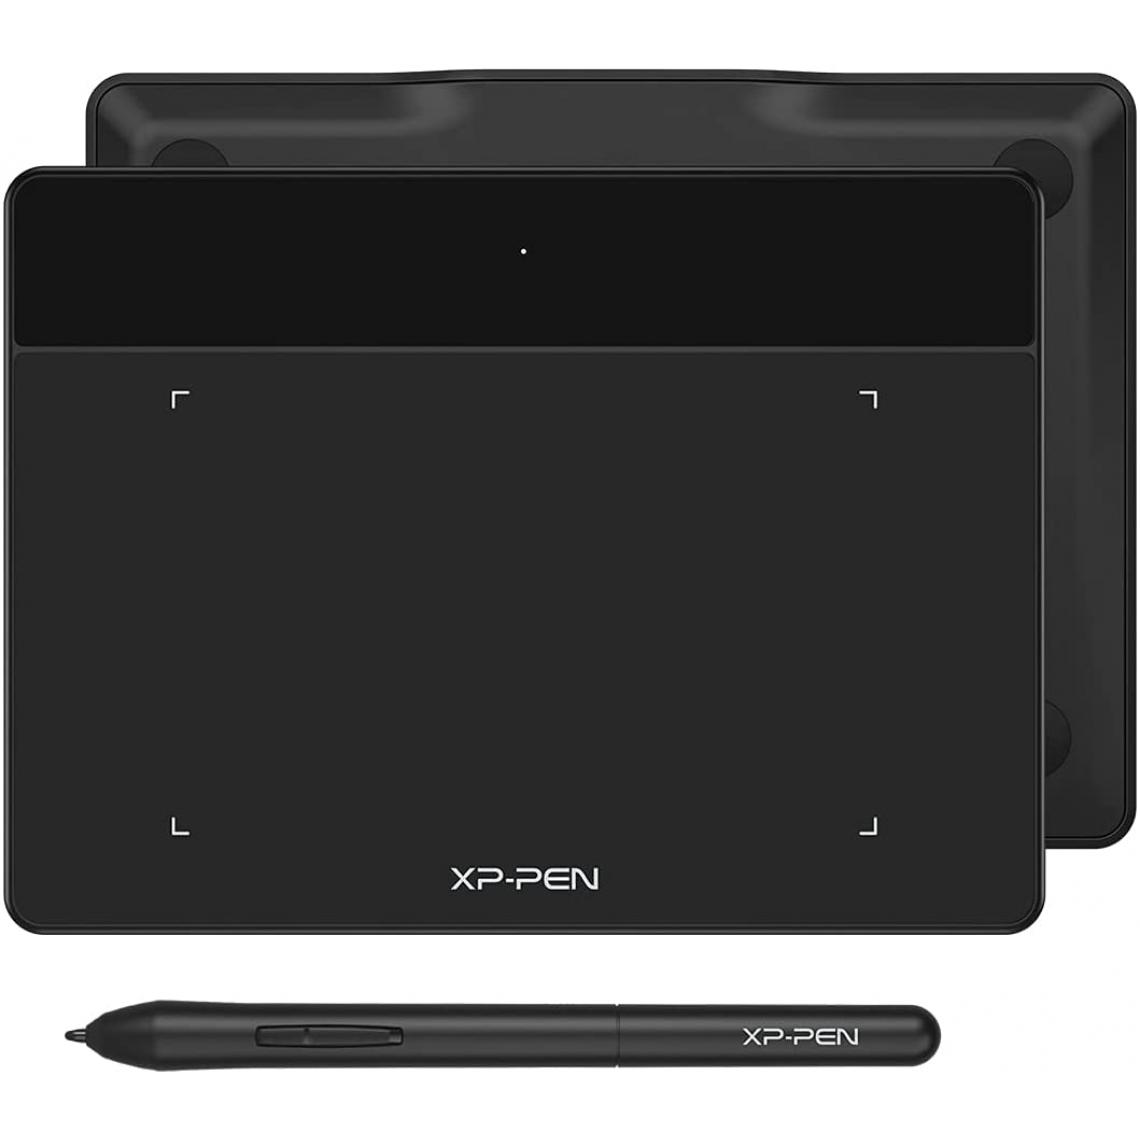 Xp-Pen - XPPen Deco Fun S Tablette Graphique à Stylet Passif à 8192 NiveauxTablette à Dessin 6x4 Pouces Compatible Mac Windows Chrome OS et Android (Noir Classique) - Tablette Graphique